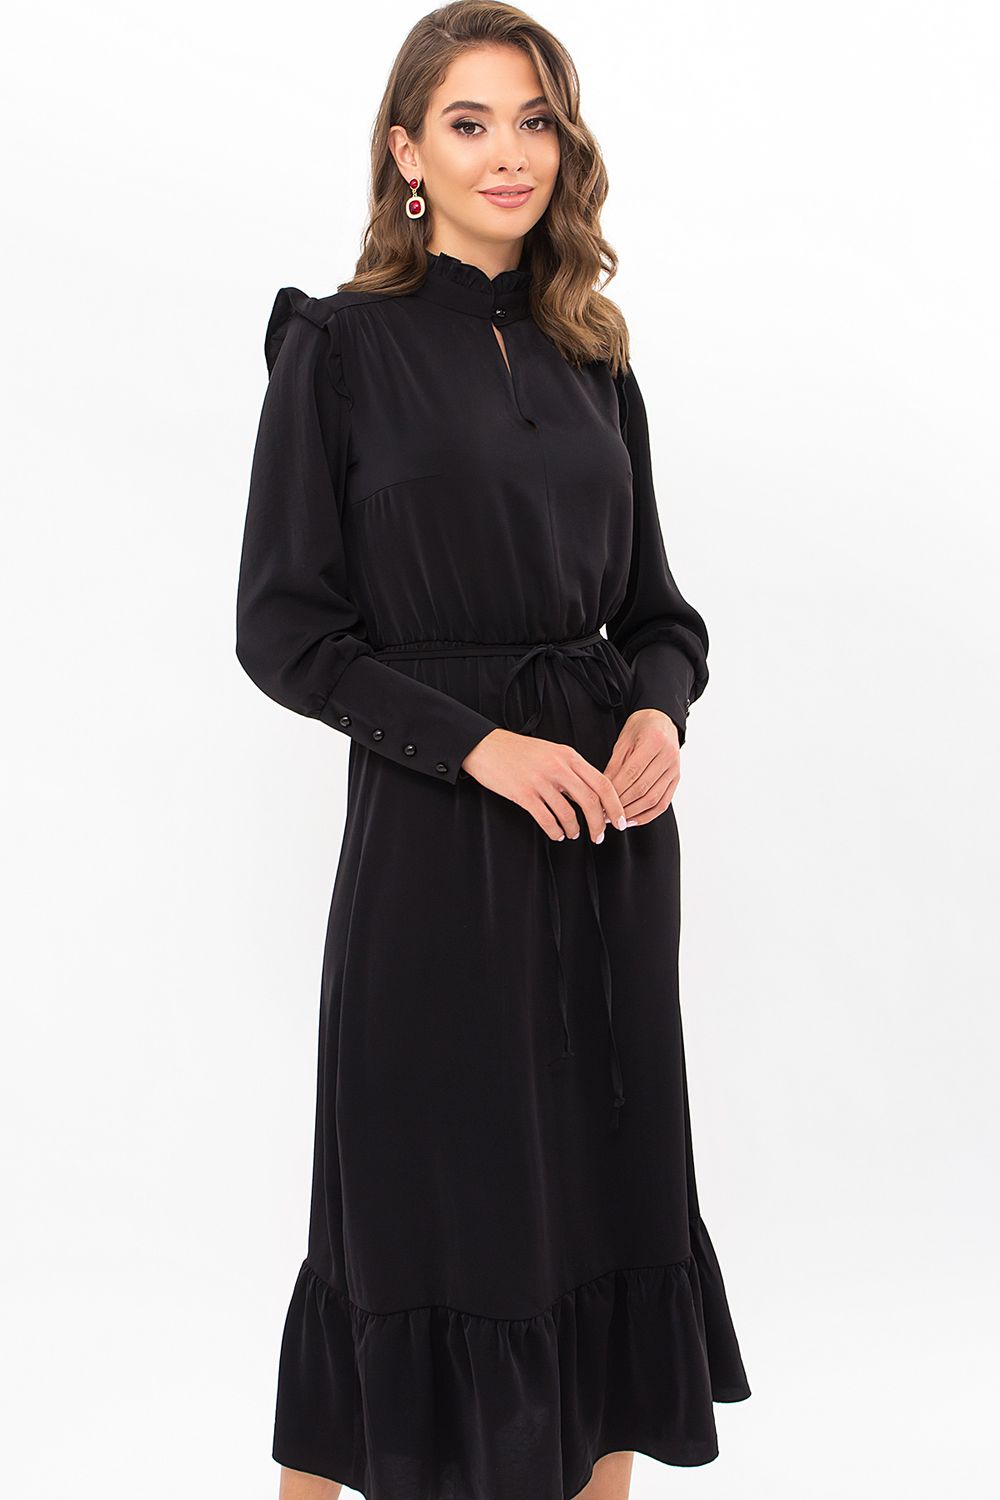 Гарне плаття міді повсякденне чорного кольору - фото